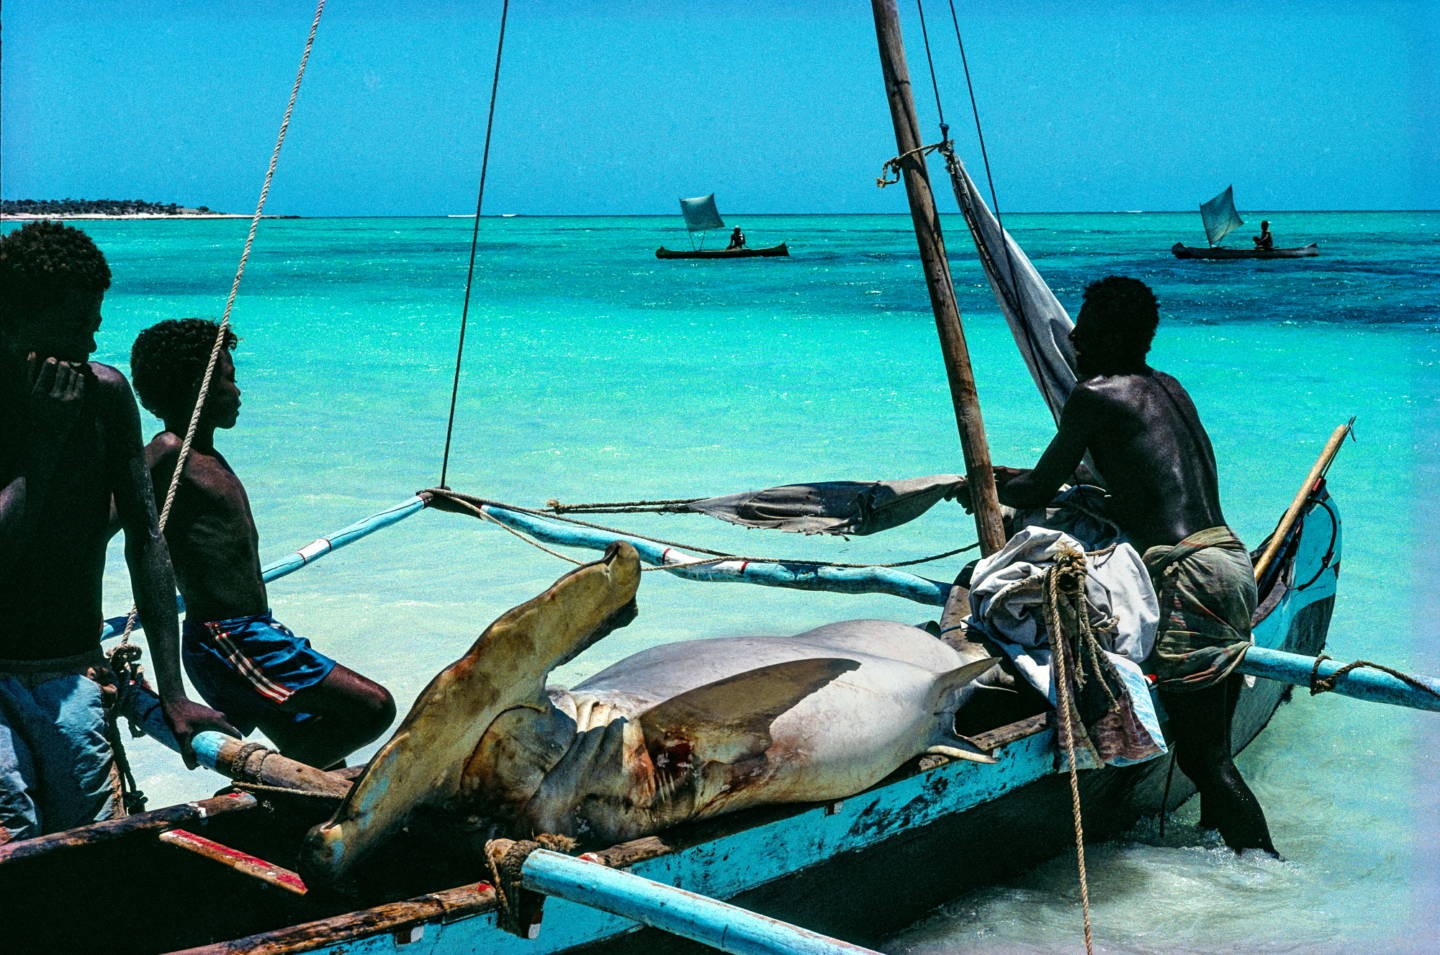 Ловля акул ради плавников, которые дорого продают в Азии. Мадагаскар. Фотограф Паскаль Мэтр